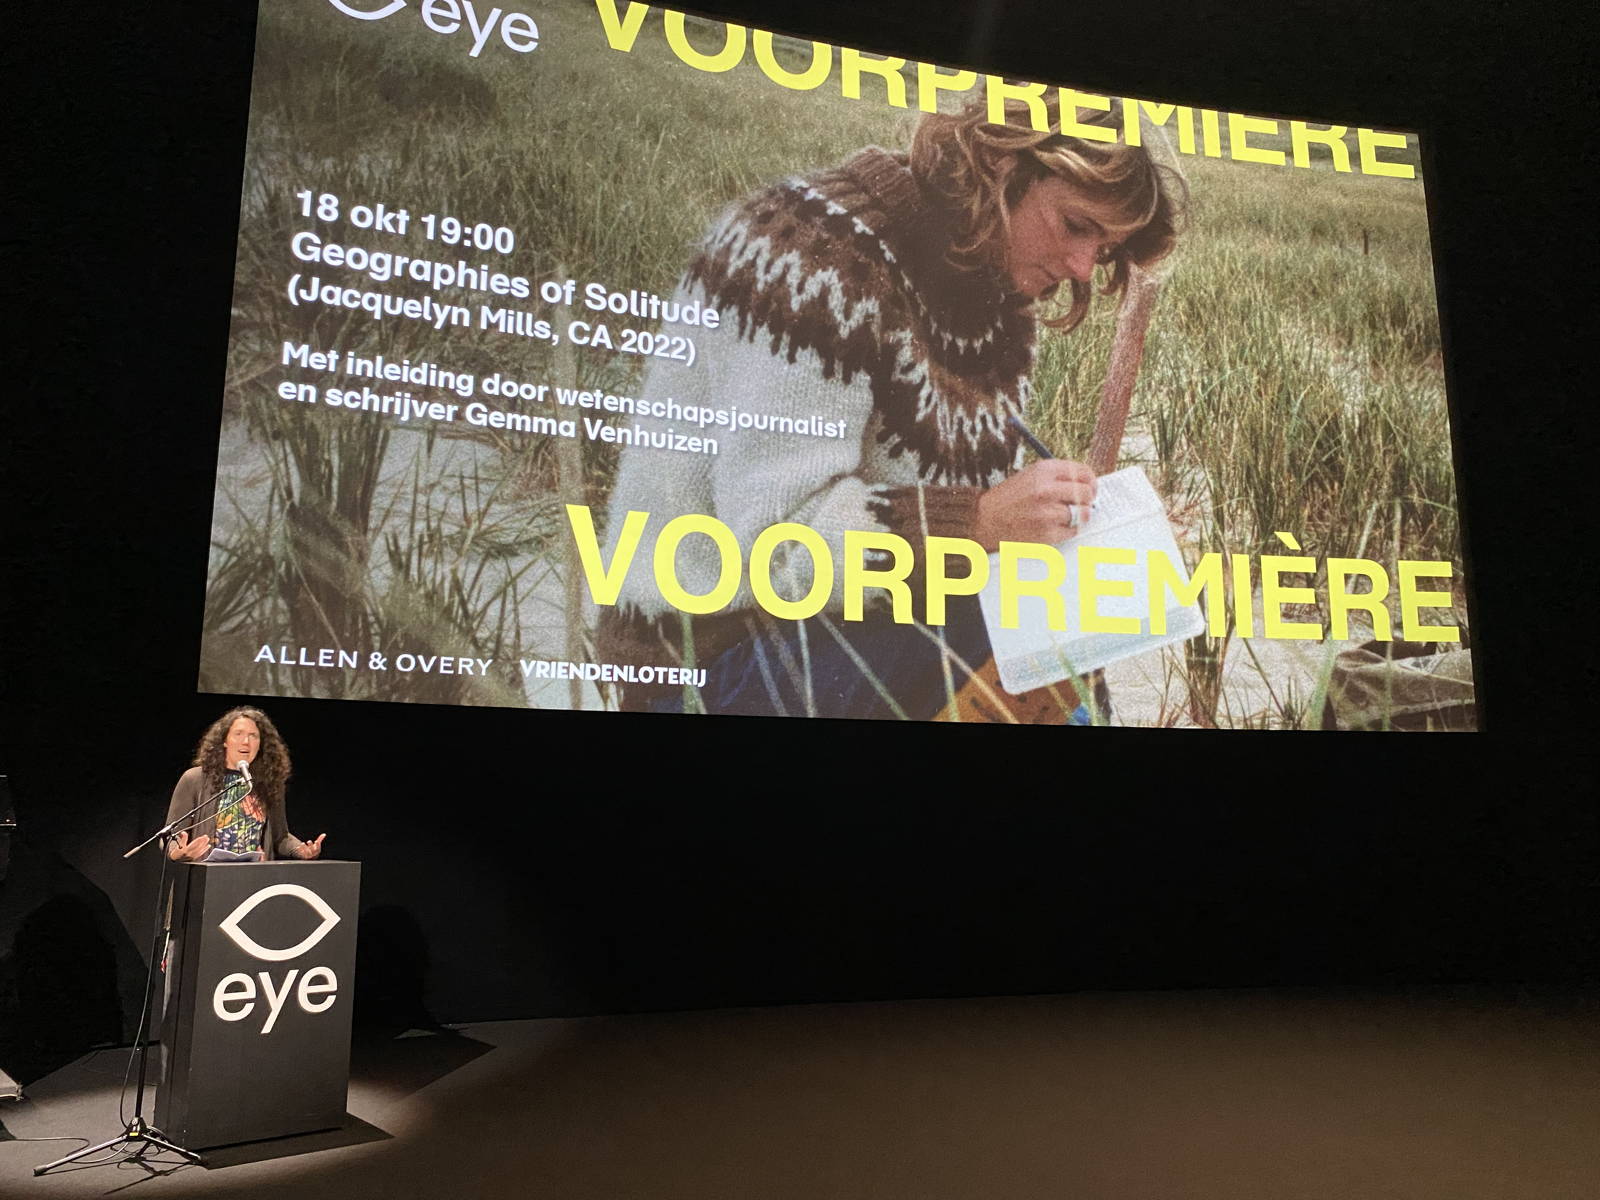 Gemma Venhuizen gaf een ontroerende inleiding voorafgaand aan de première van Geographies of Solitude in Eye